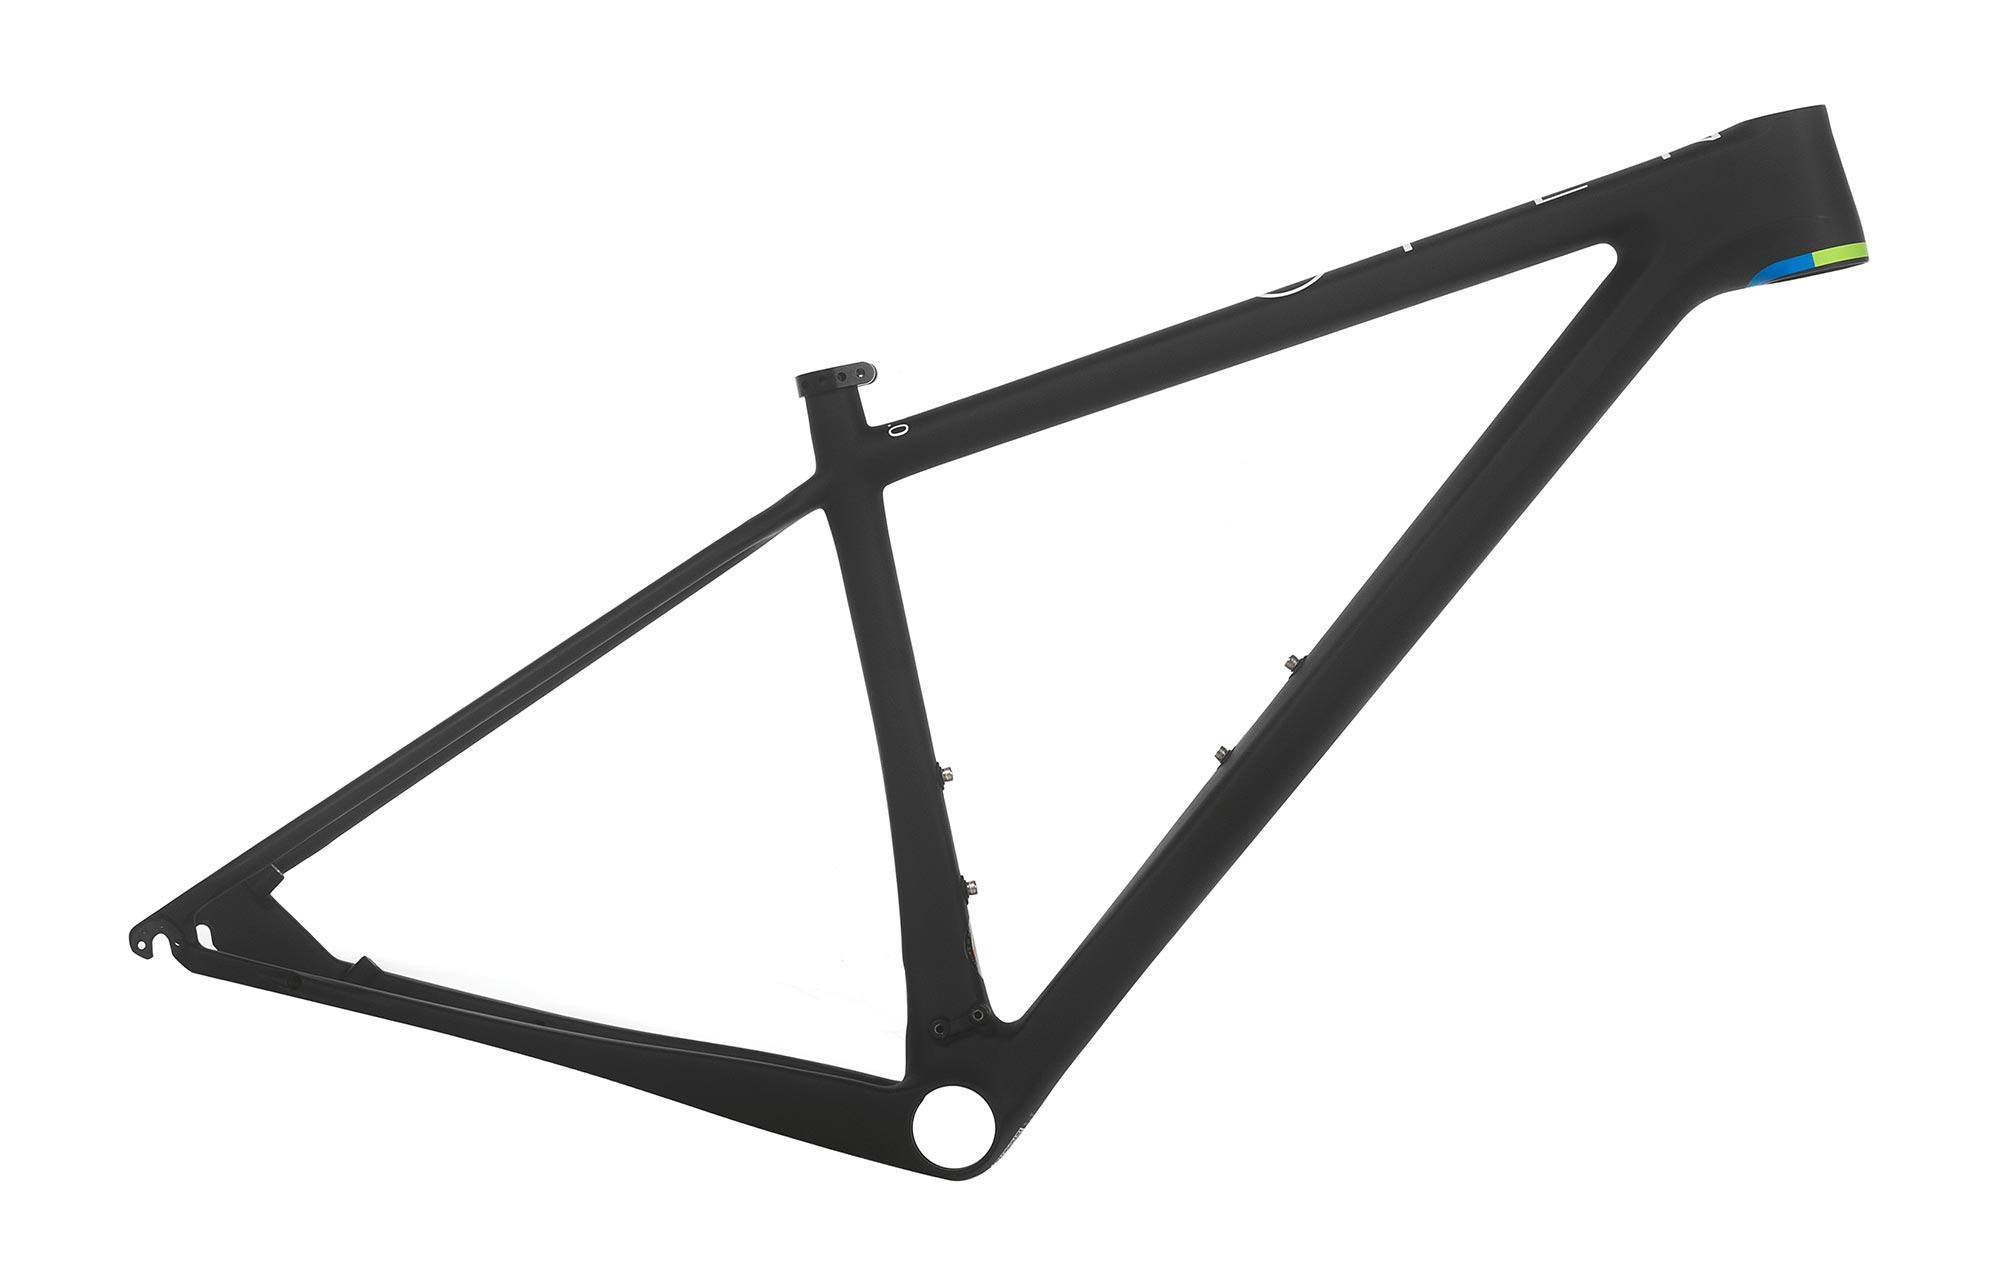 open bike frame